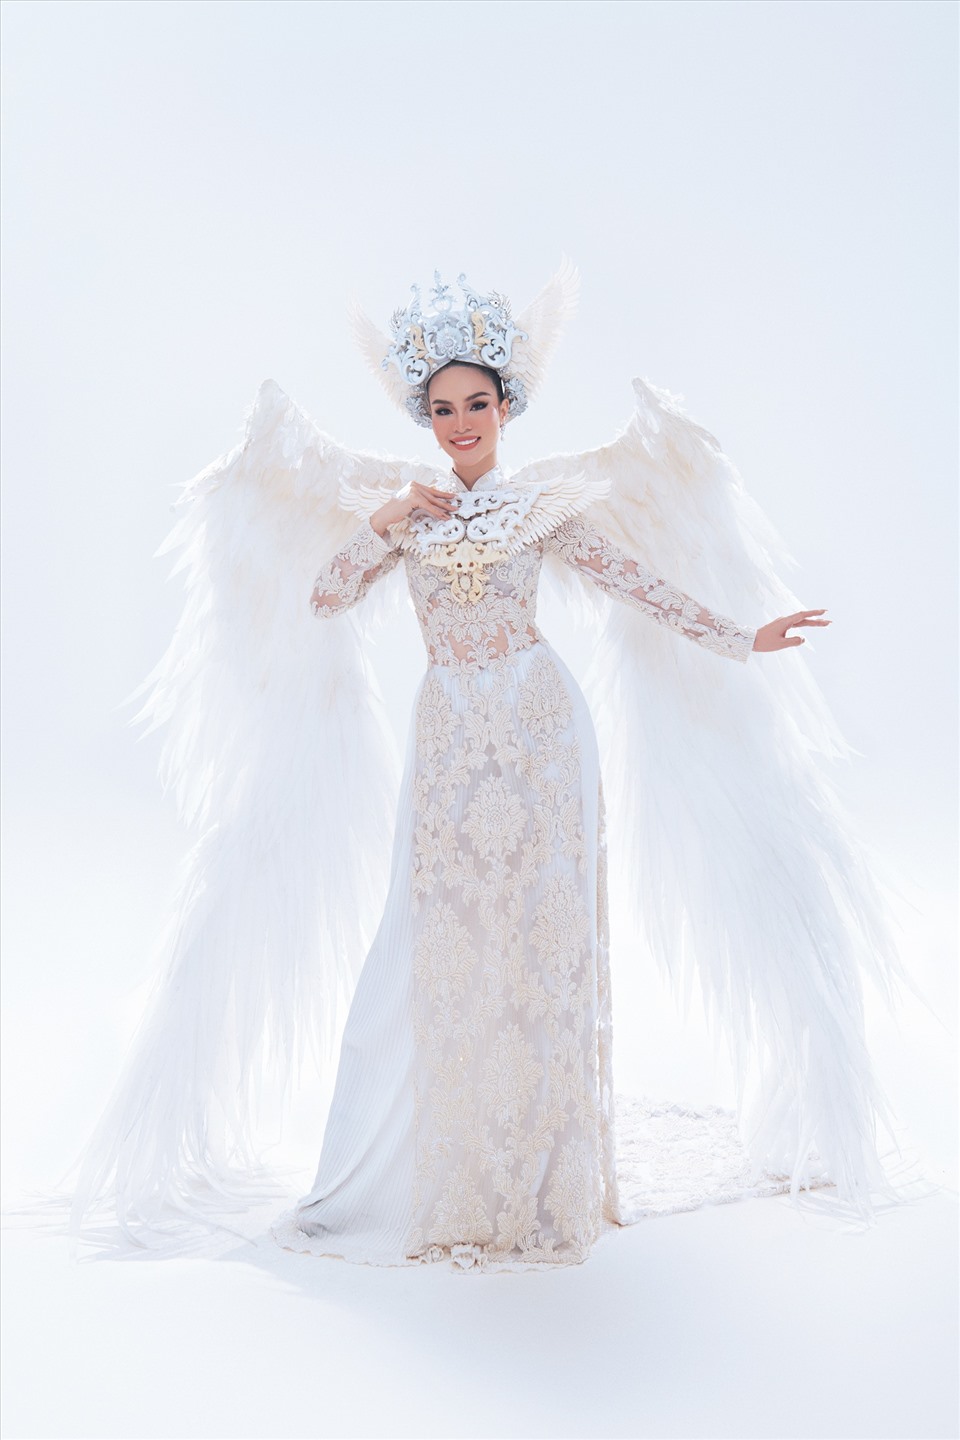 Với màu trắng chủ đạo, bộ trang phục thể hiện sự thanh thoát, nhẹ nhàng, vừa quyền lực vừa ấn tượng cũng sẽ là lựa chọn khó để Hoàng Hương Ly thể hiện tại cuộc thi này.